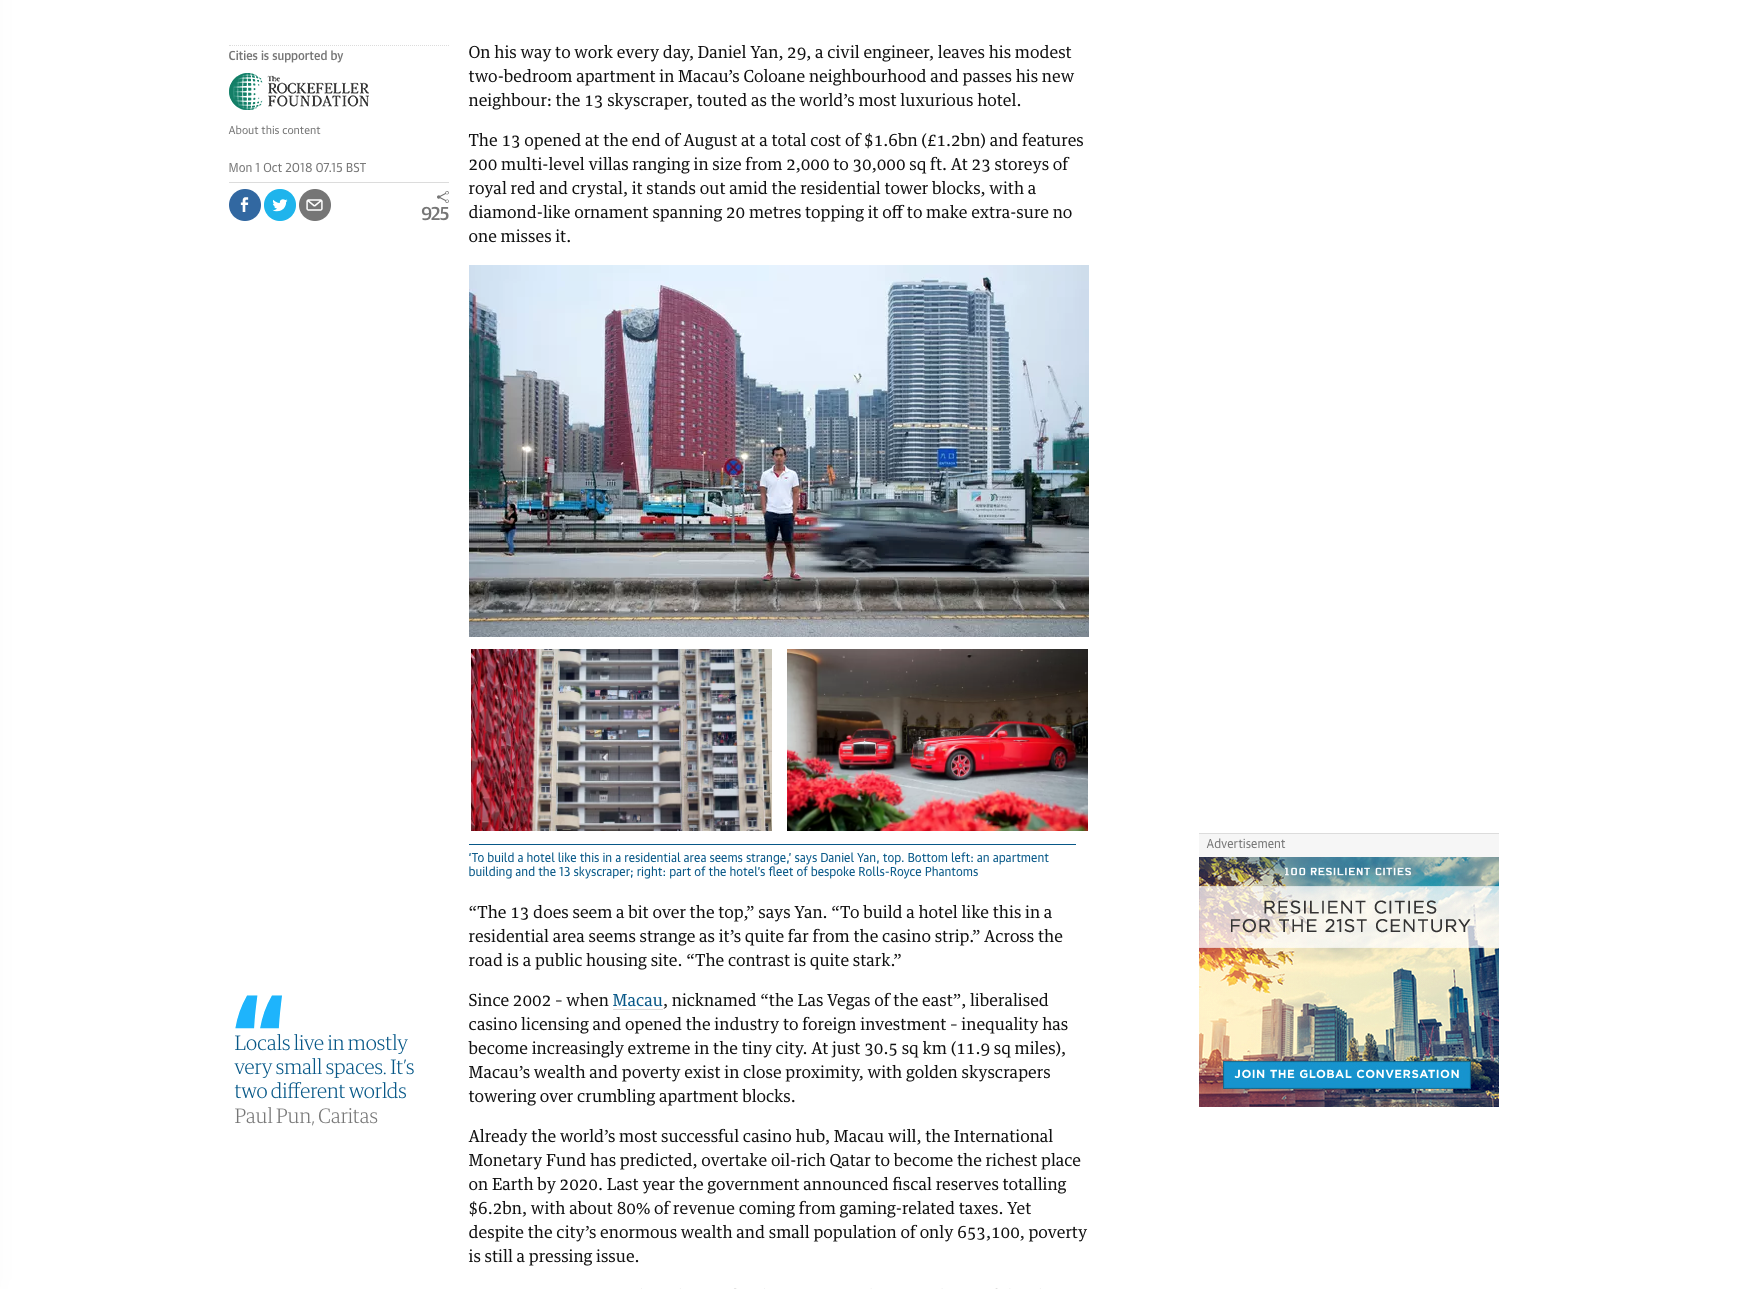 Multibillion-dollar Macau: a city of glitz and grit 